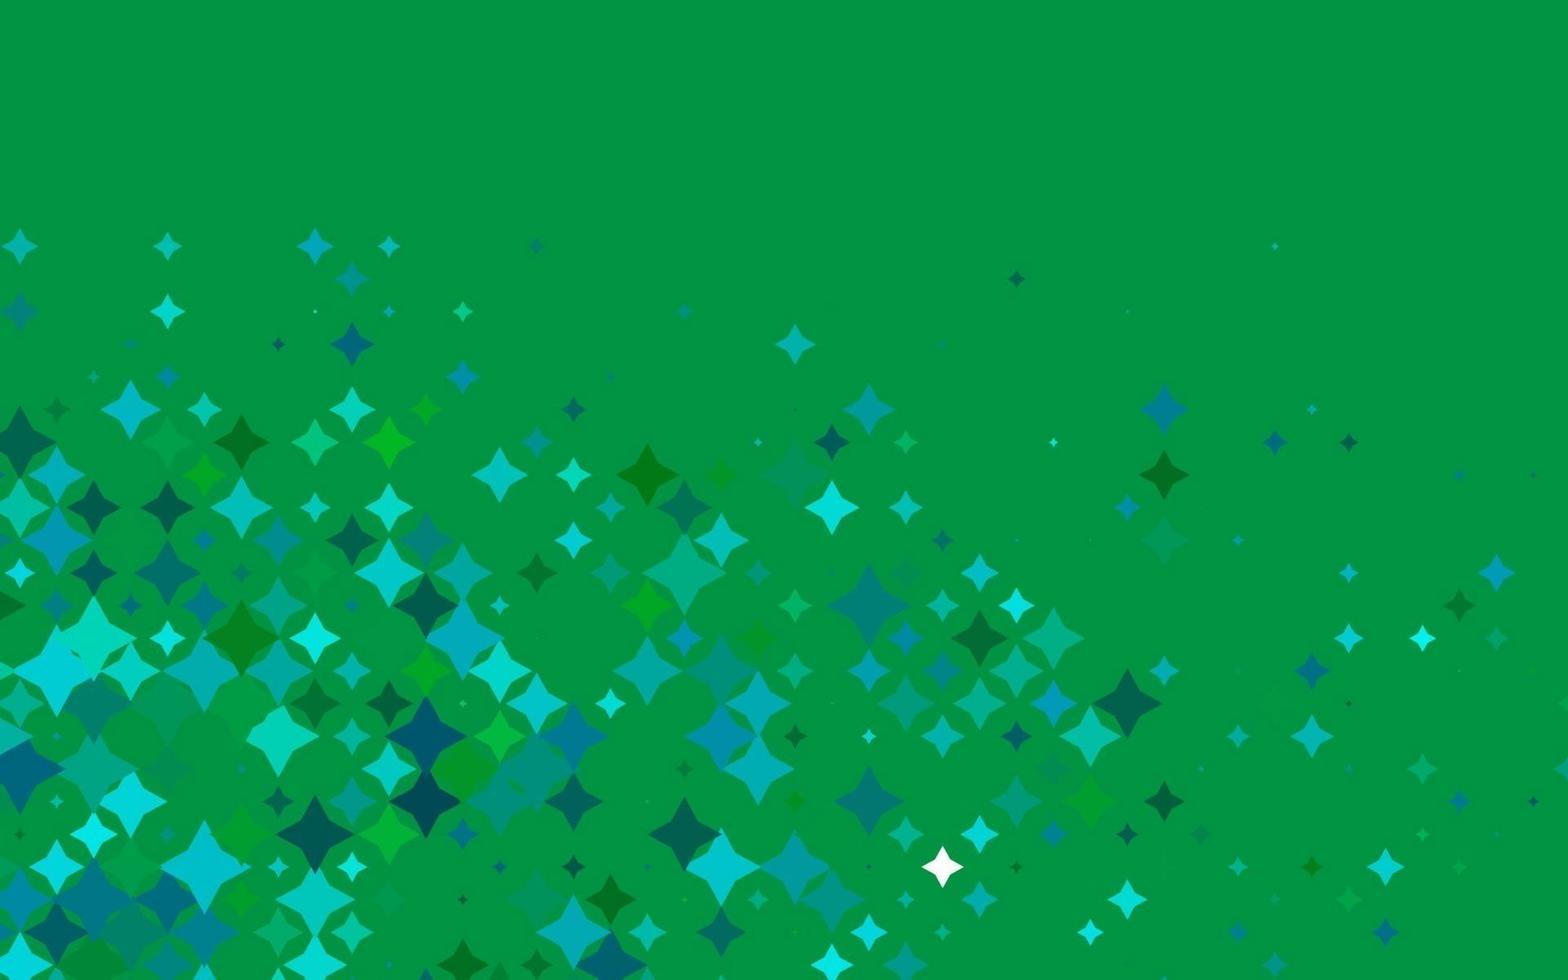 ljusblå, grön vektorbakgrund med färgade stjärnor. vektor